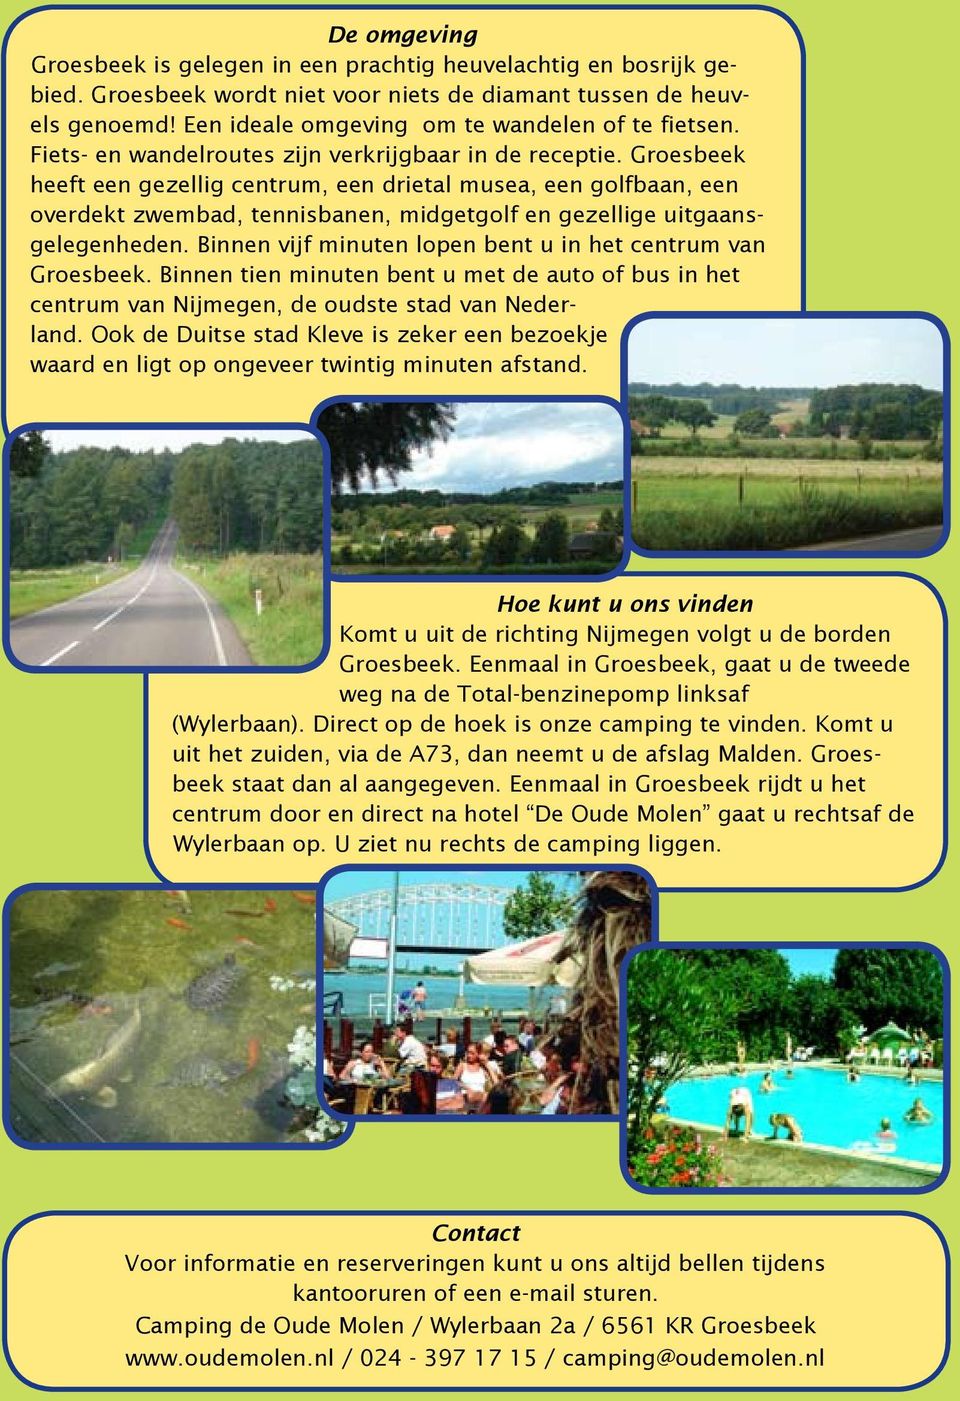 Groesbeek heeft een gezellig centrum, een drietal musea, een golfbaan, een overdekt zwembad, tennisbanen, midgetgolf en gezellige uitgaansgelegenheden.